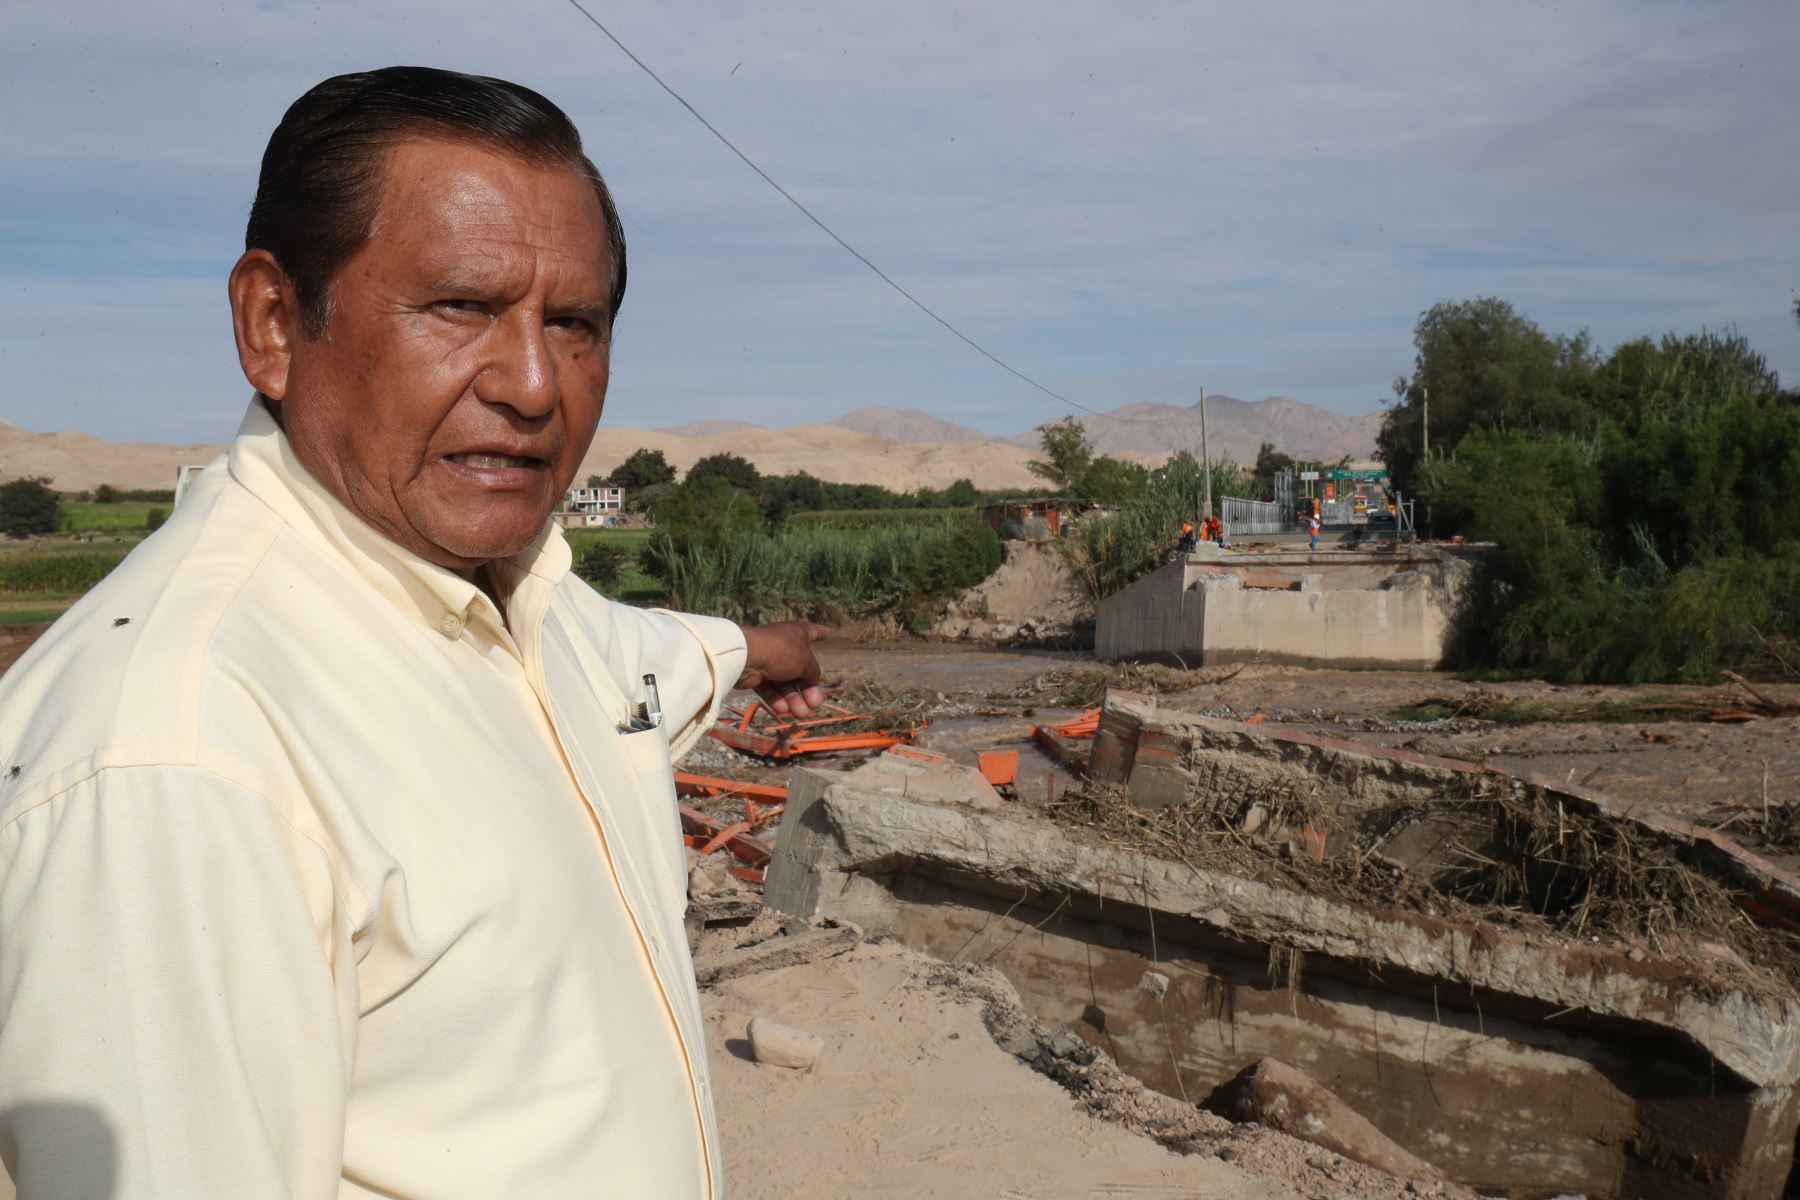 El gobernador regional de Moquegua, Zenon Cuevas, informó hoy que viene coordinando con sus pares de Tacna y Arequipa, para que se declare a la zona sur del país en proceso de reconstrucción, tal como ocurrió en el norte del territorio nacional. ANDINA/Juan Carlos Guzmán